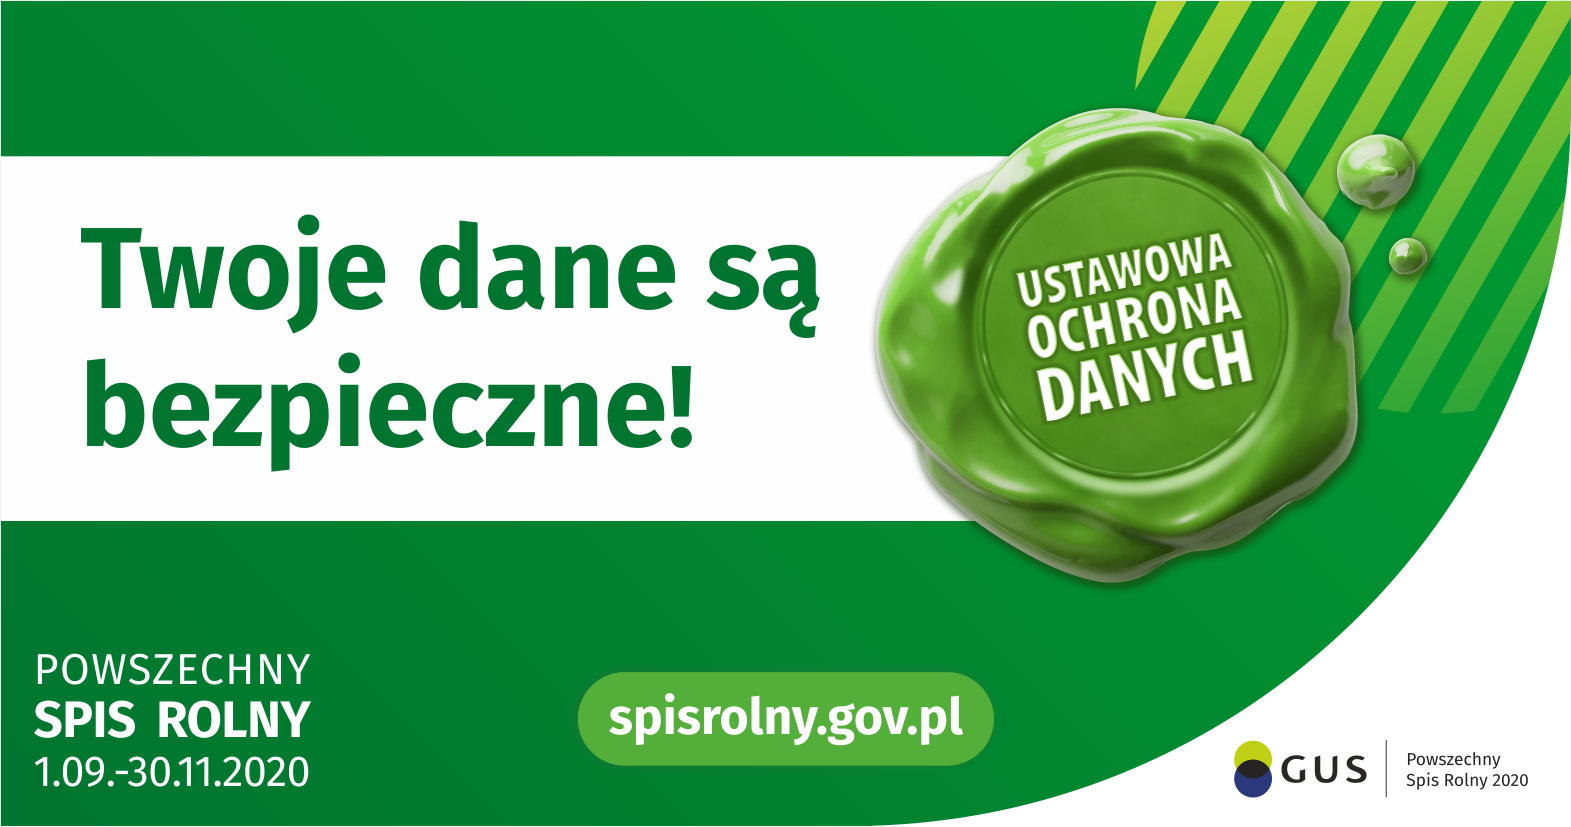 Obraz na zielonym tle. W centrum widnieje napis- Twoje dane są bezpieczne,a na dole Powszechny Spis Rolny 1.09-30.11.2020 i spisrolny.gov.pl